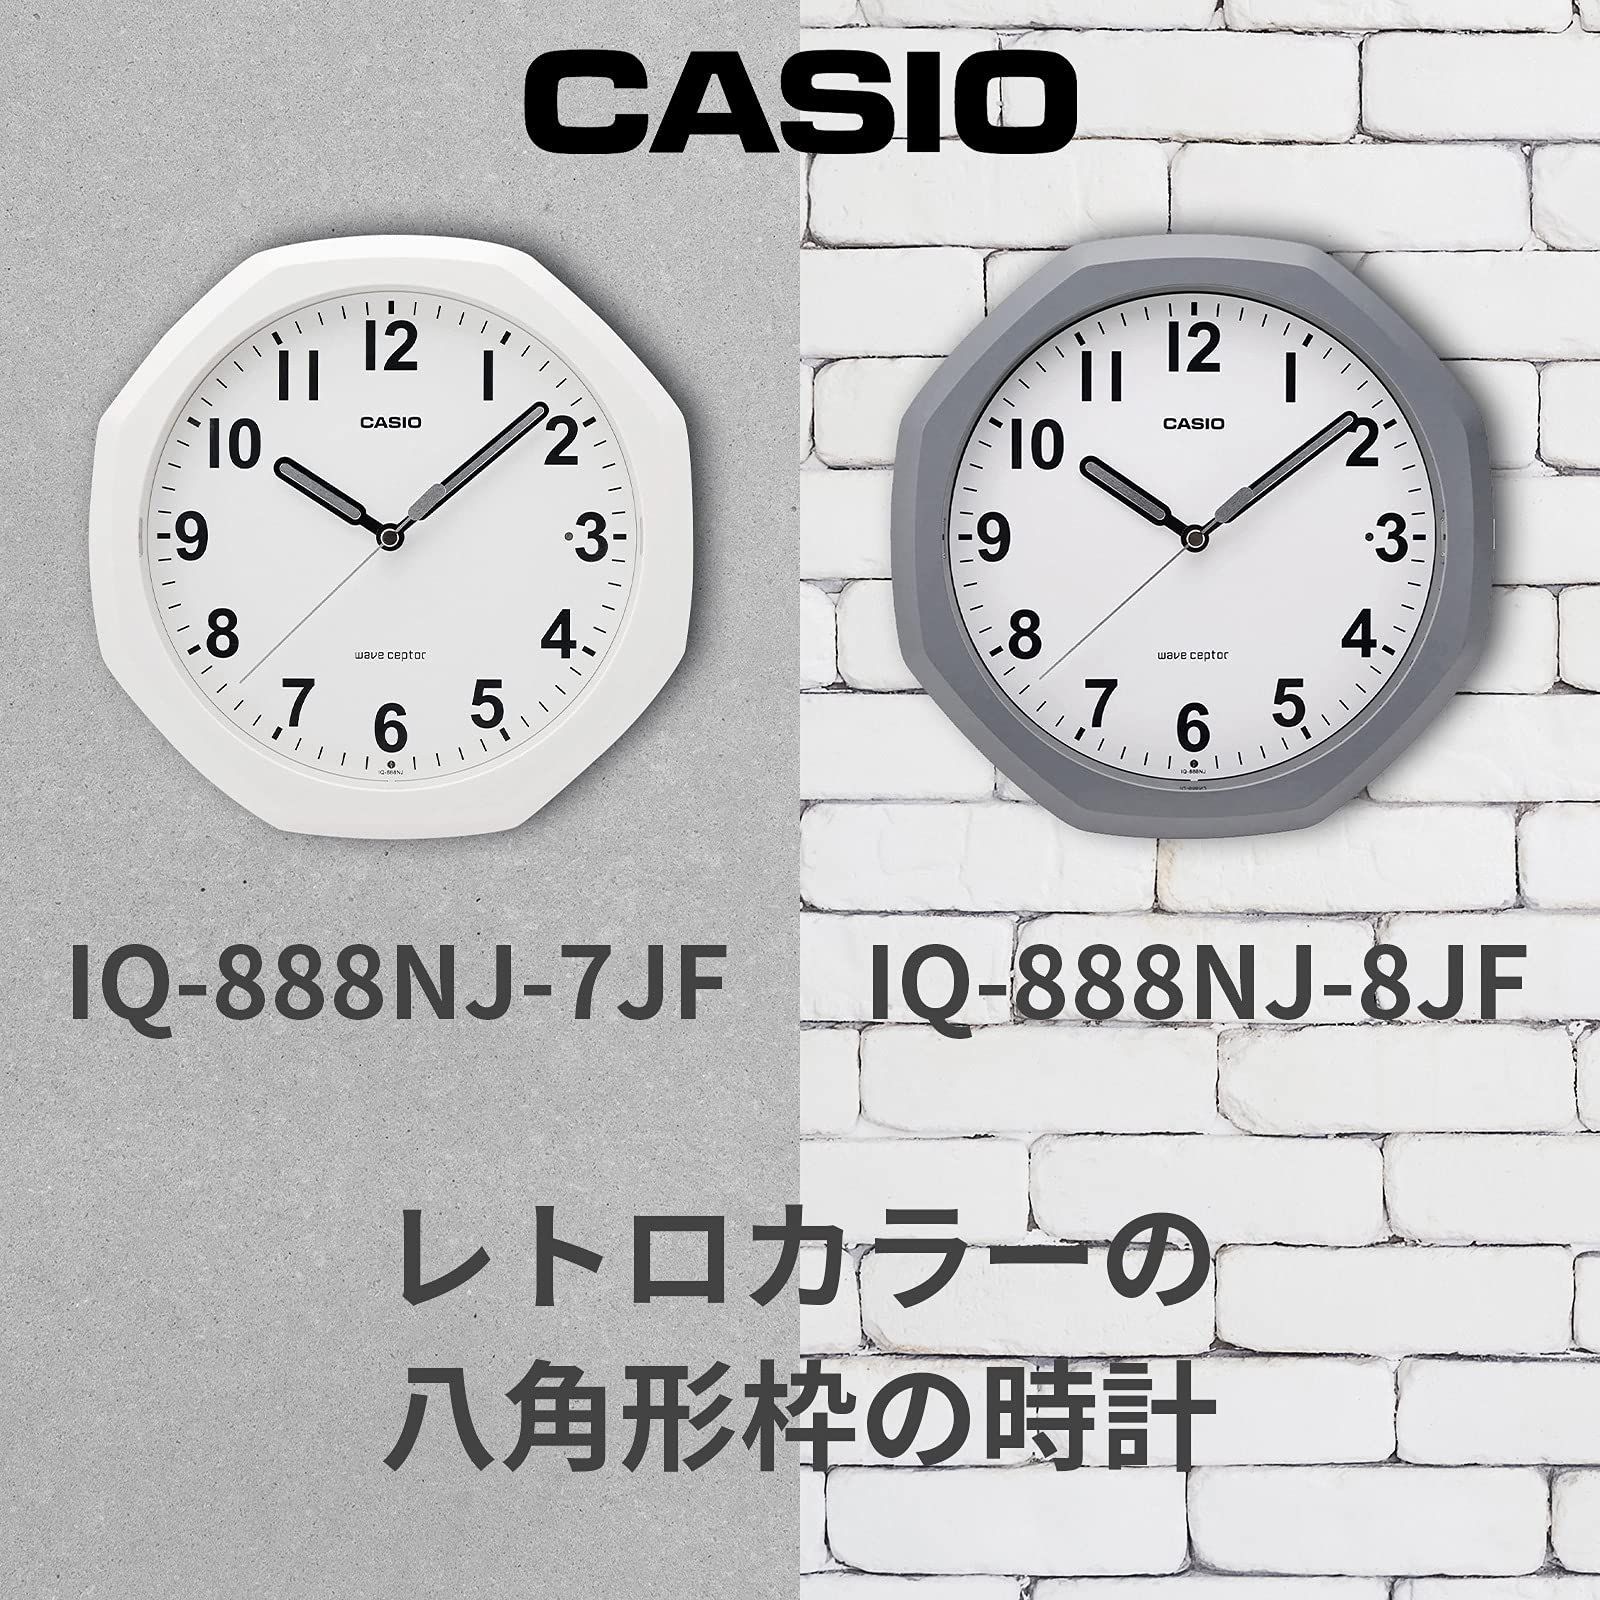 電波時計 掛け時計 グレー アナログ 自動点灯 CASIO(カシオ) 夜間秒針停止 置き掛け兼用 IQ-888NJ-8JF